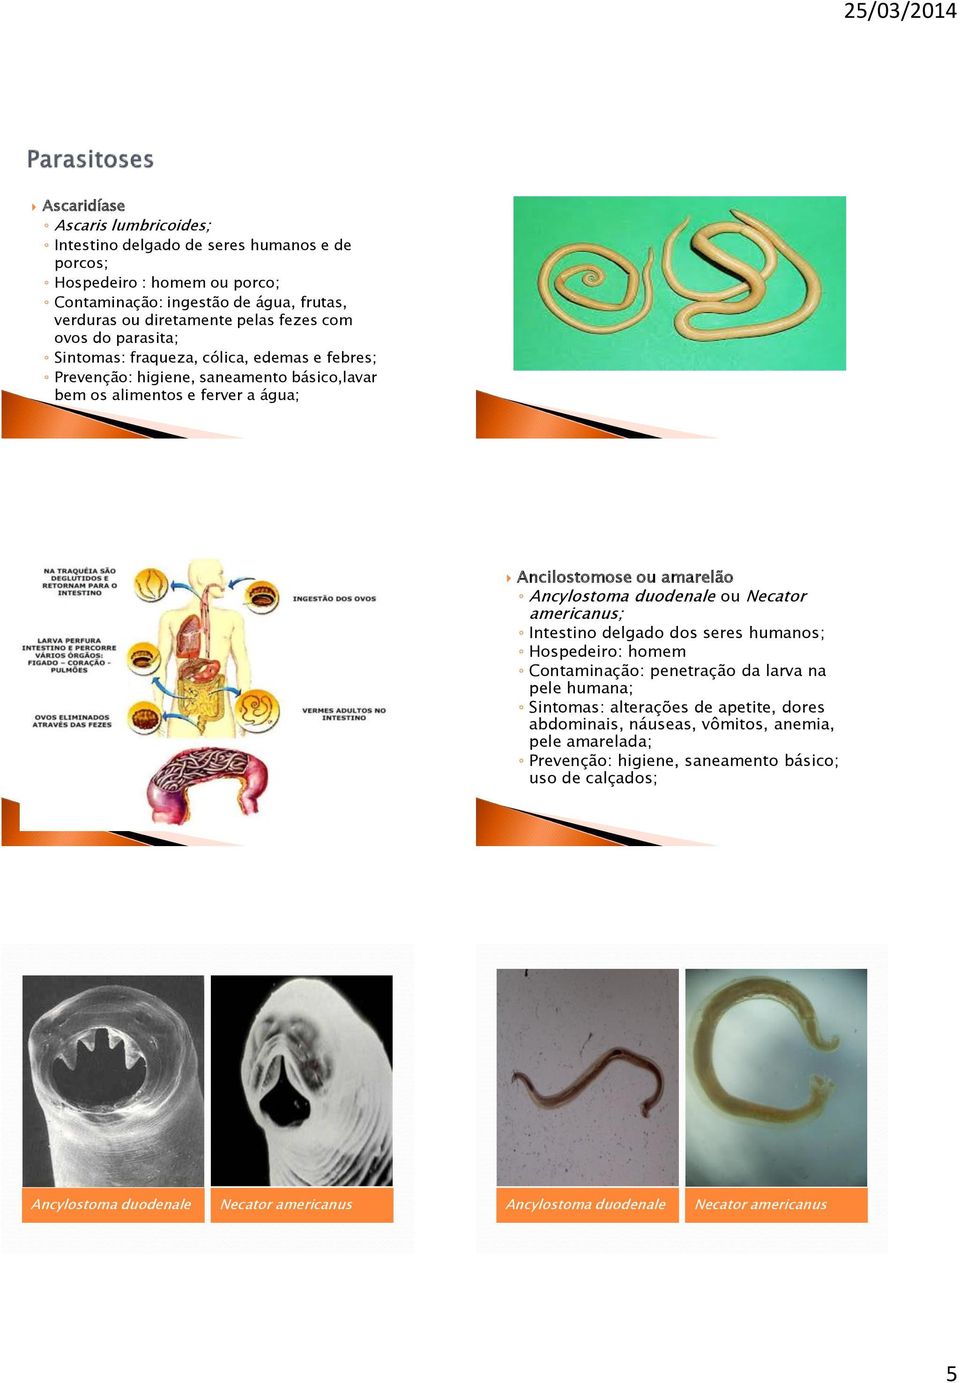 Ancylostoma duodenale ou Necator americanus; Intestino delgado dos seres humanos; Hospedeiro: homem Contaminação: penetração da larva na pele humana; Sintomas: alterações de apetite,